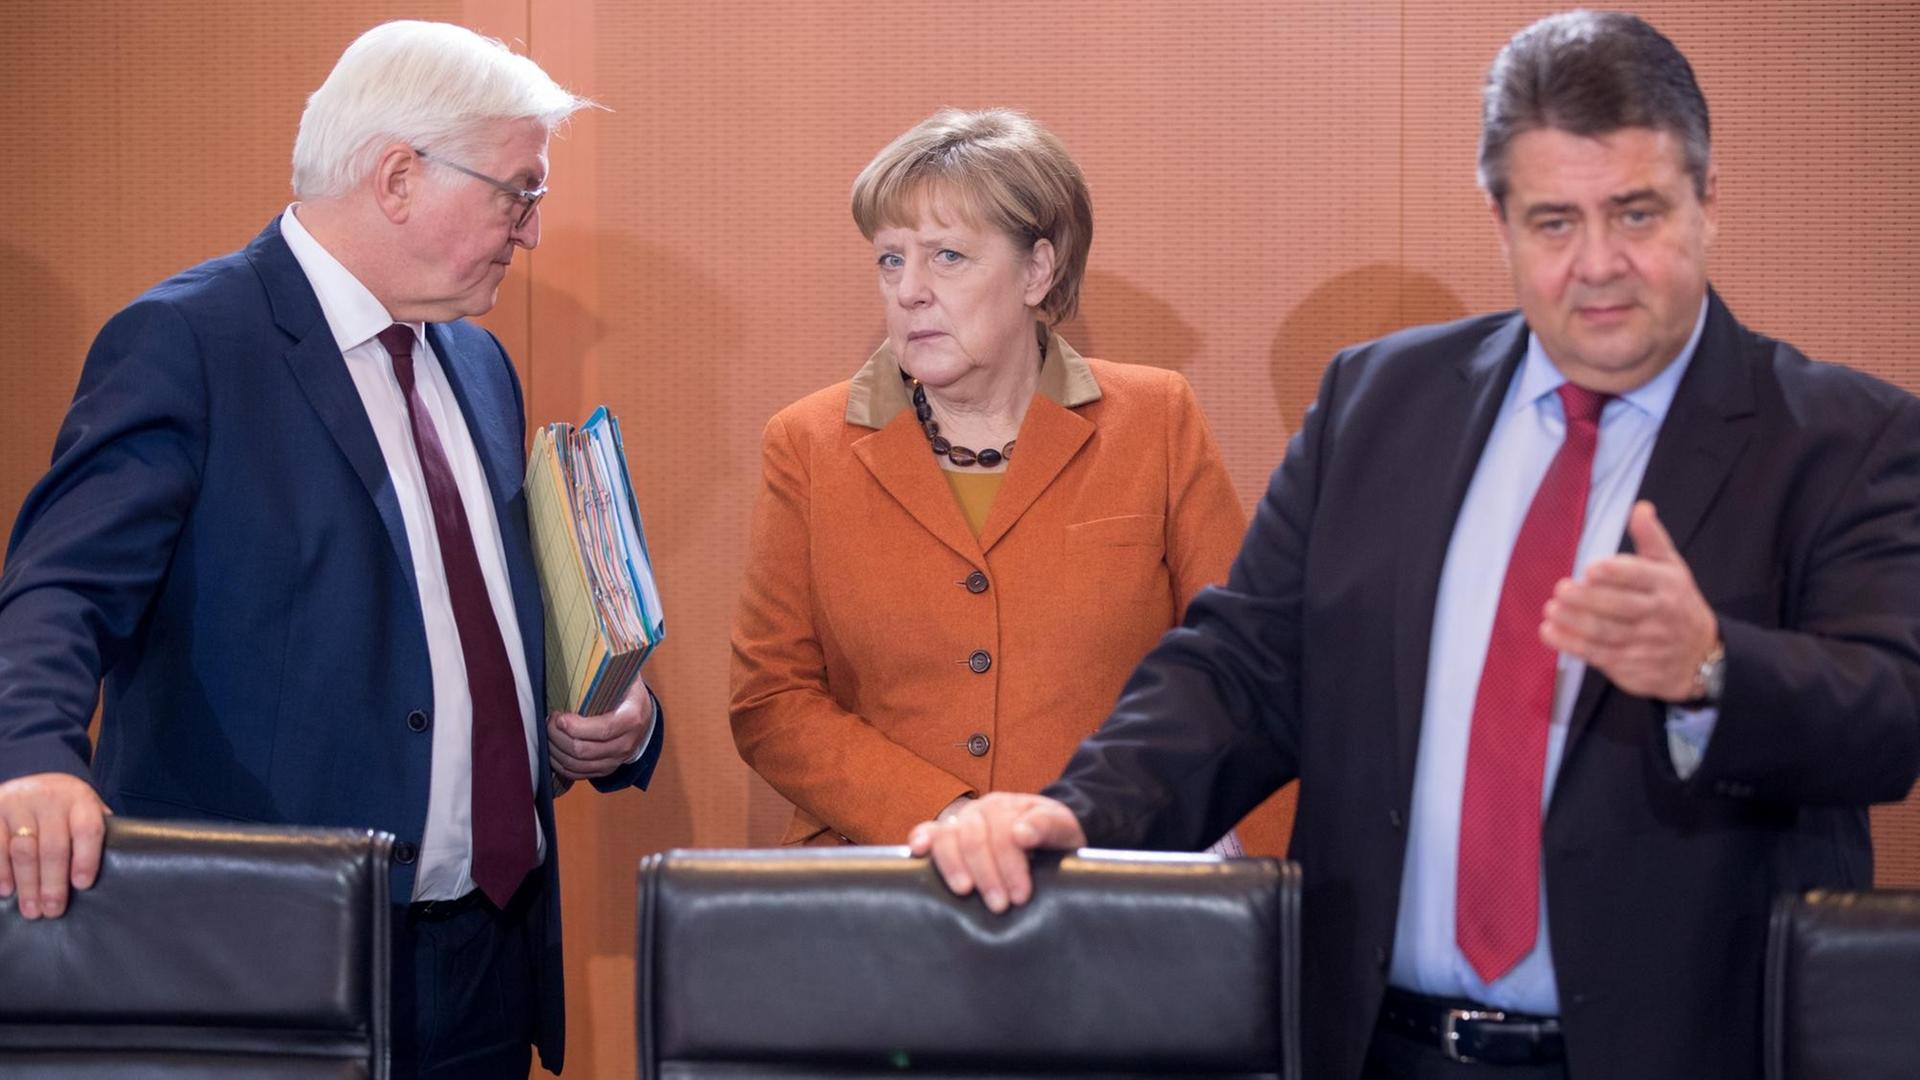 Bundesaußenminister Frank-Walter Steinmeier (SPD), Bundeskanzlerin Angela Merkel (CDU) und Bundeswirtschaftsminister Sigmar Gabriel (SPD) (v.l.) stehen am Kabinettstisch.